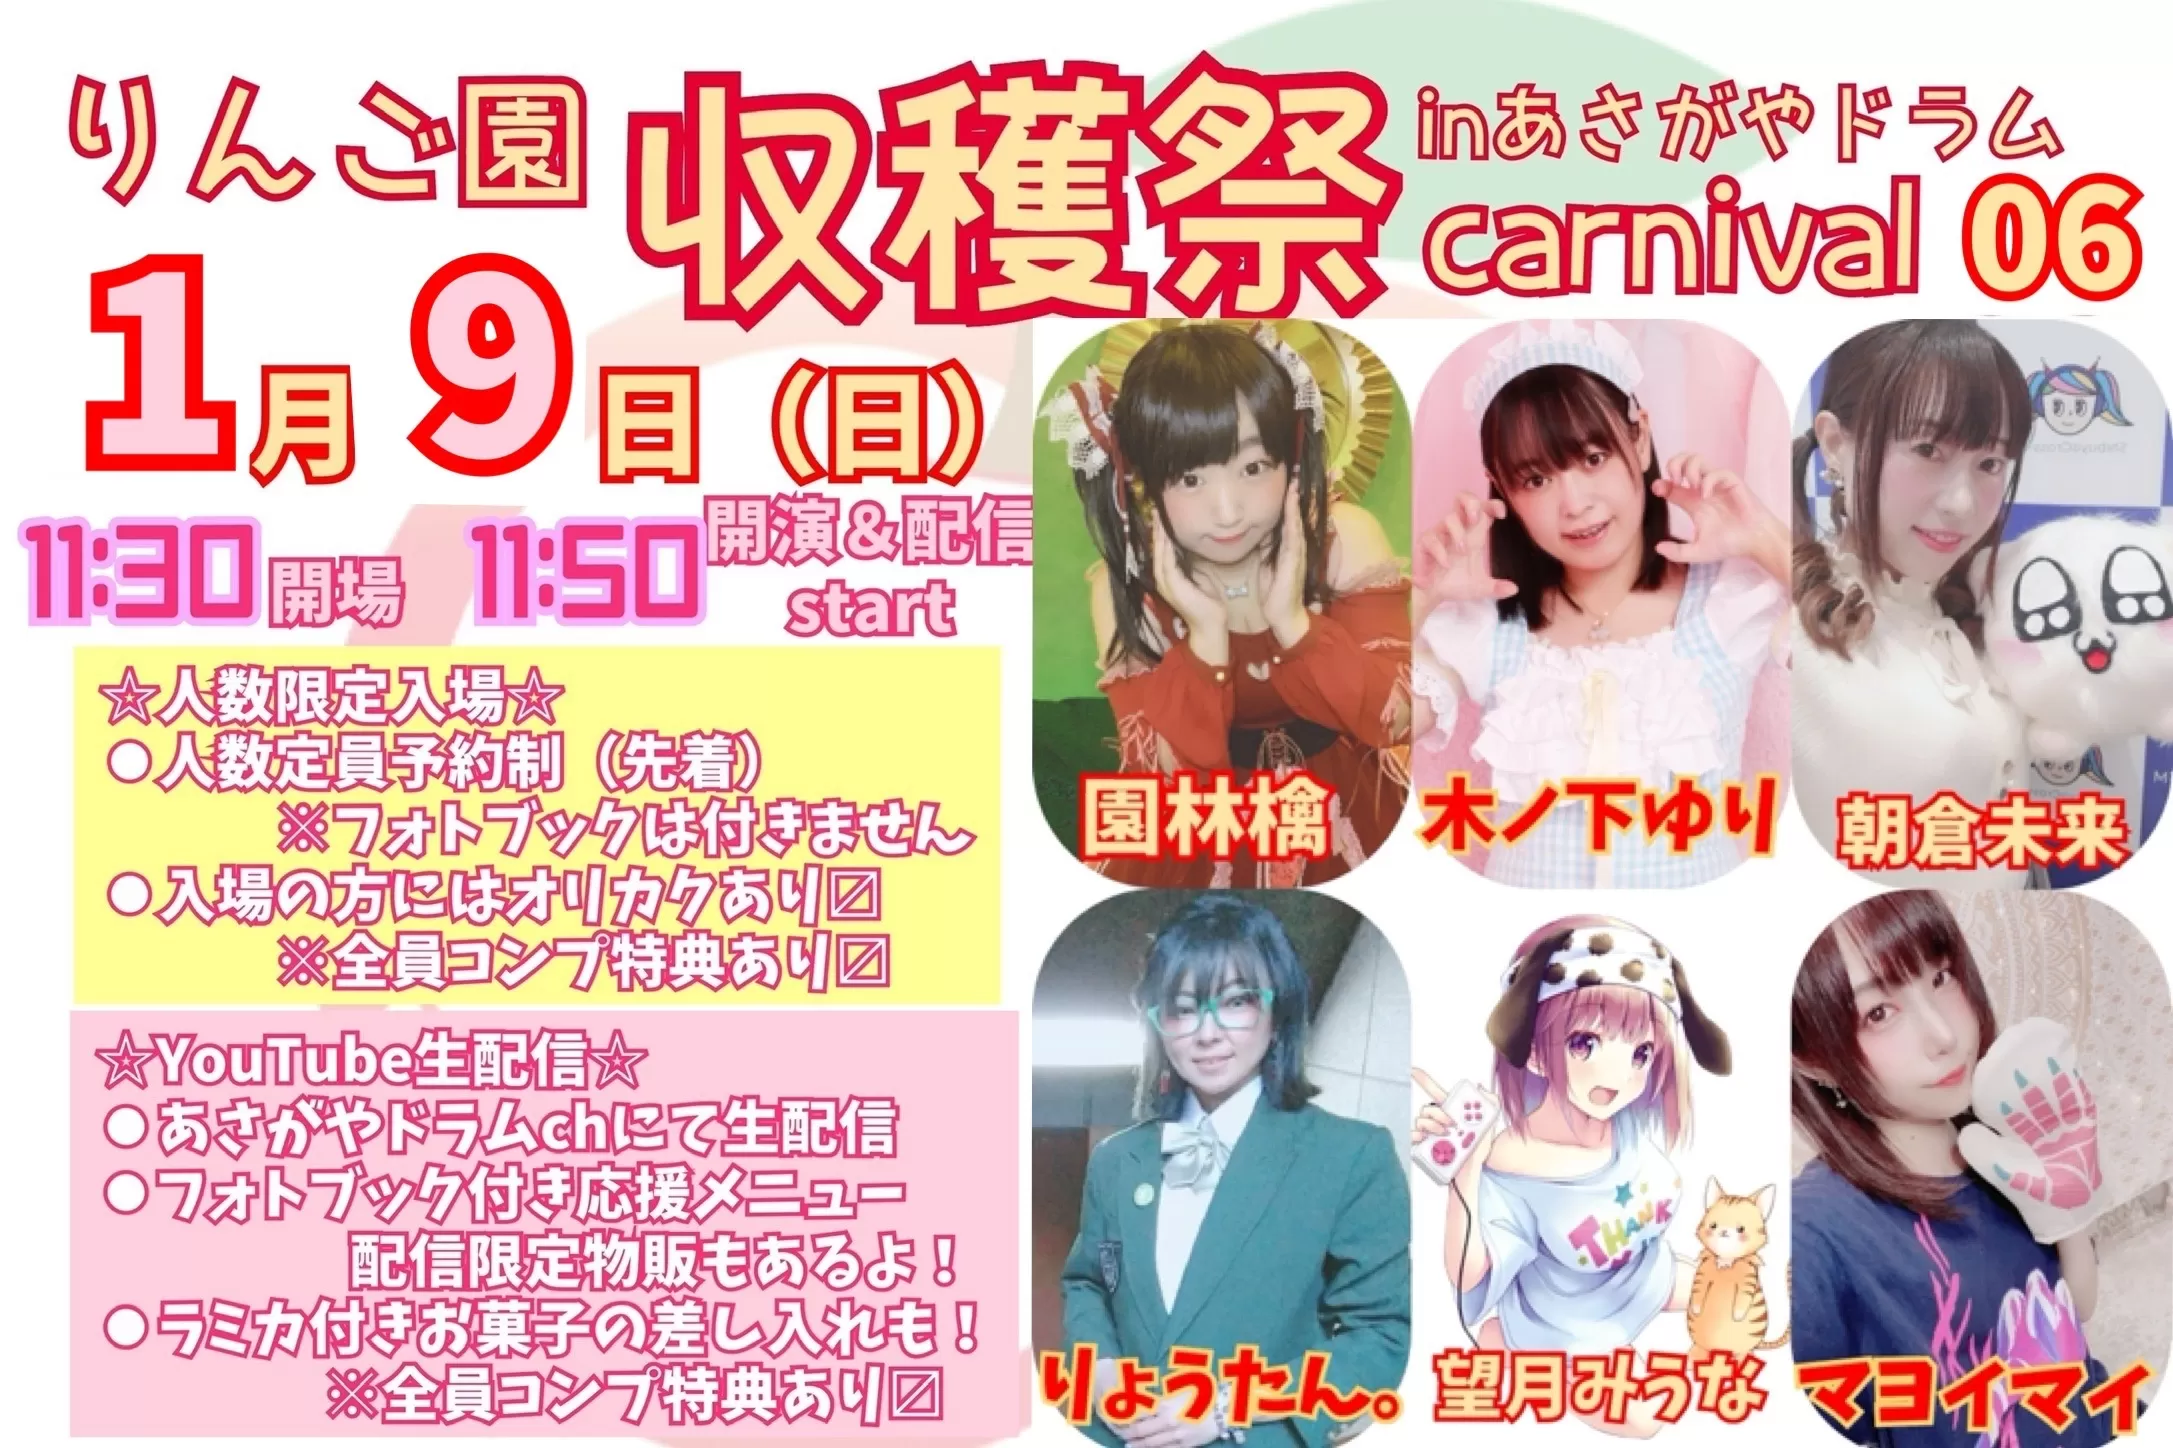 りんご園収穫祭〜carnival 06〜